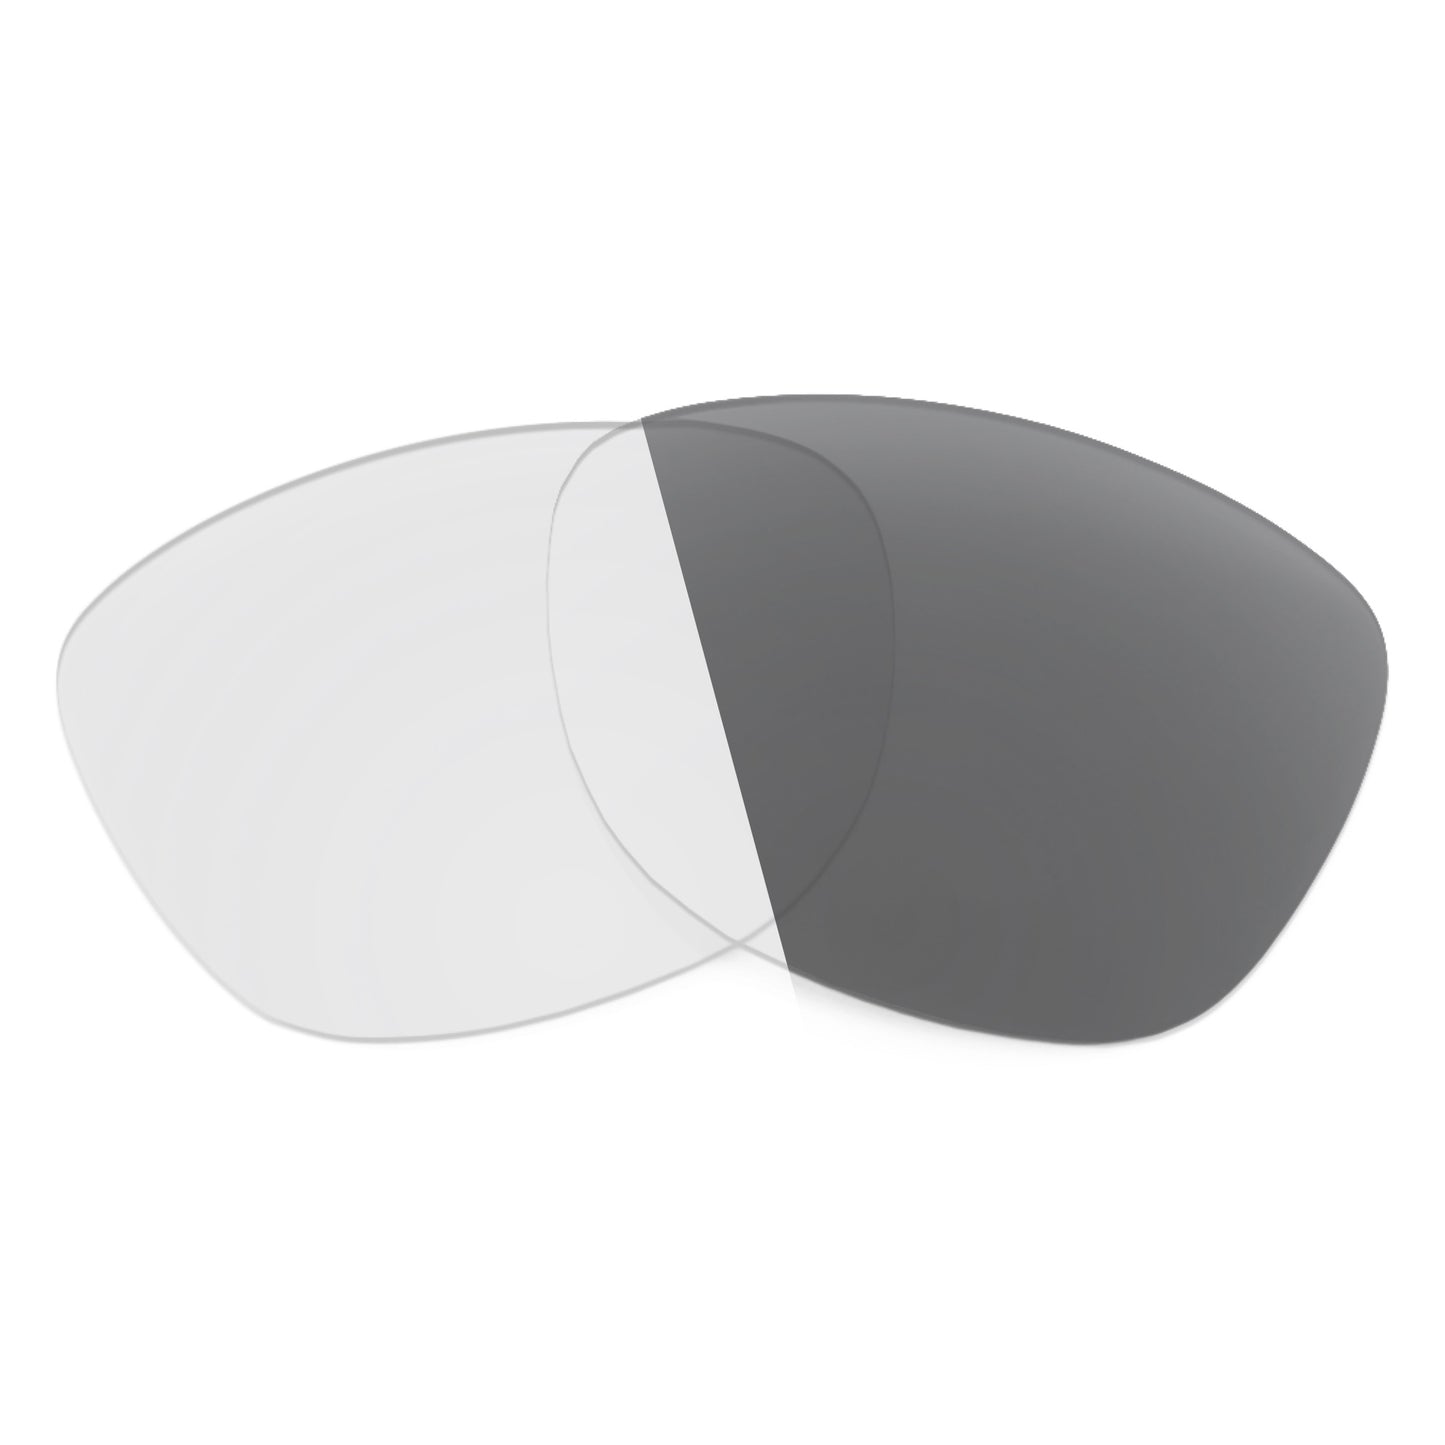 Revant replacement lenses for Revo Slater Non-Polarized Adapt Gray Photochromic